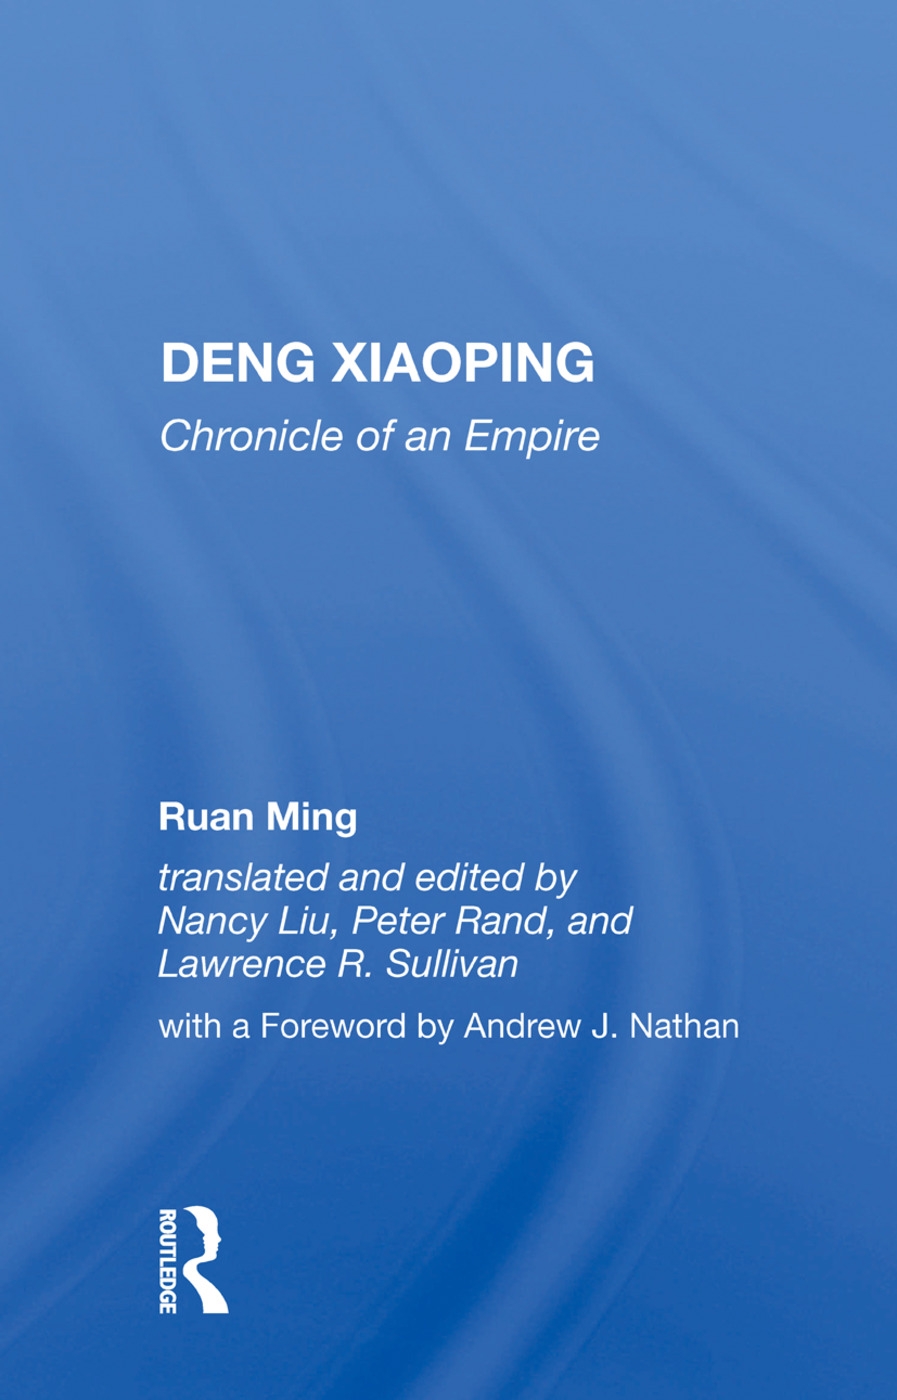 Deng Xiaoping: Chronicle of an Empire